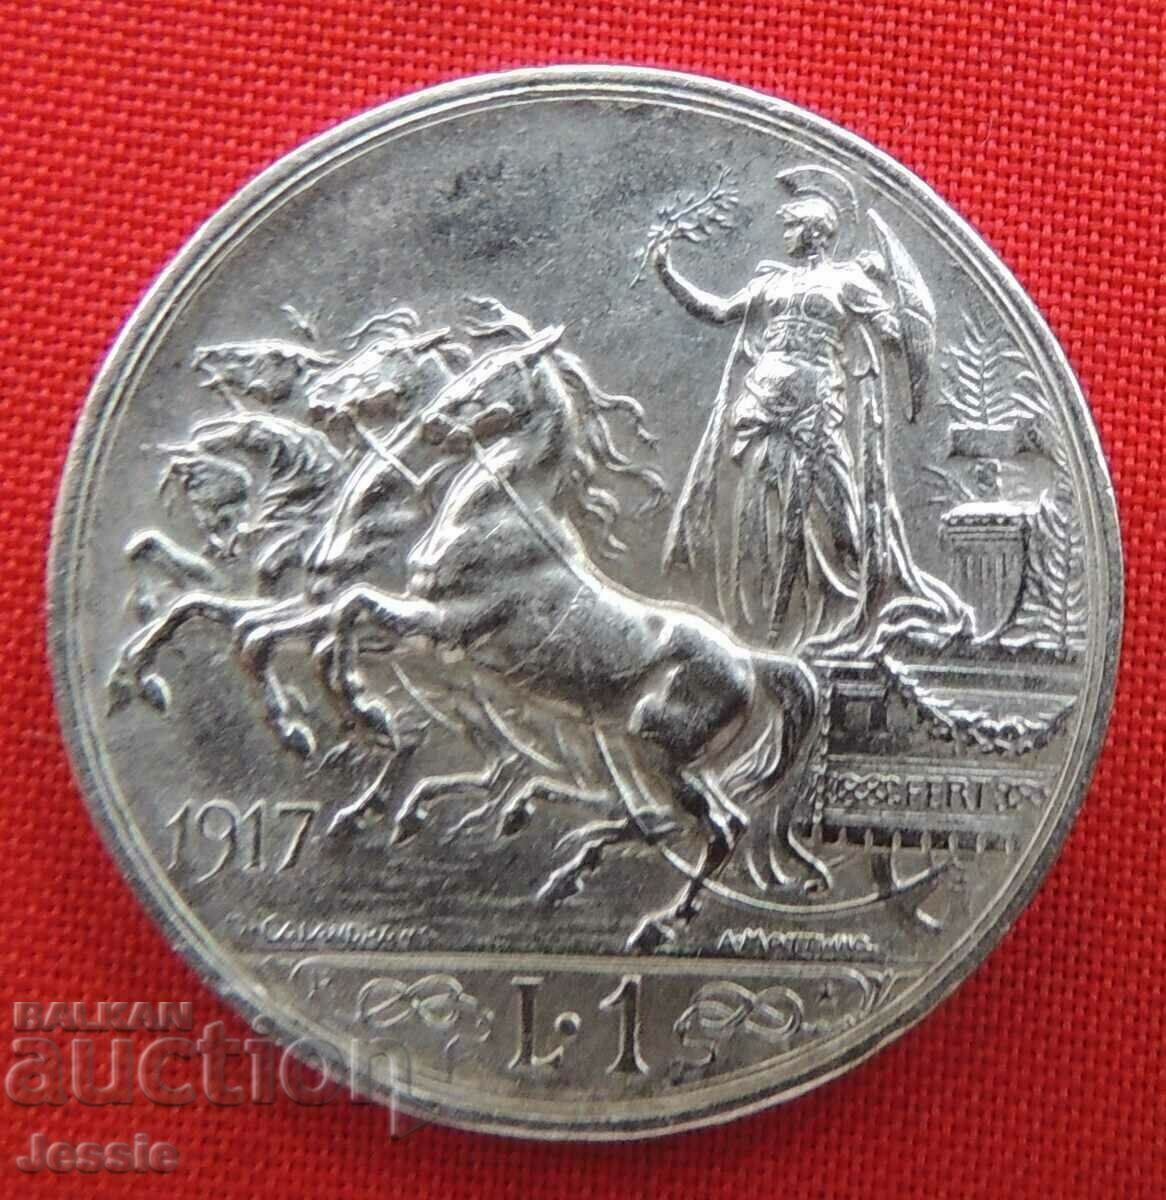 1 Lira 1917 R Ιταλίας ασήμι Ποιότητα Συγκρίνετε και Βαθμολογήστε!